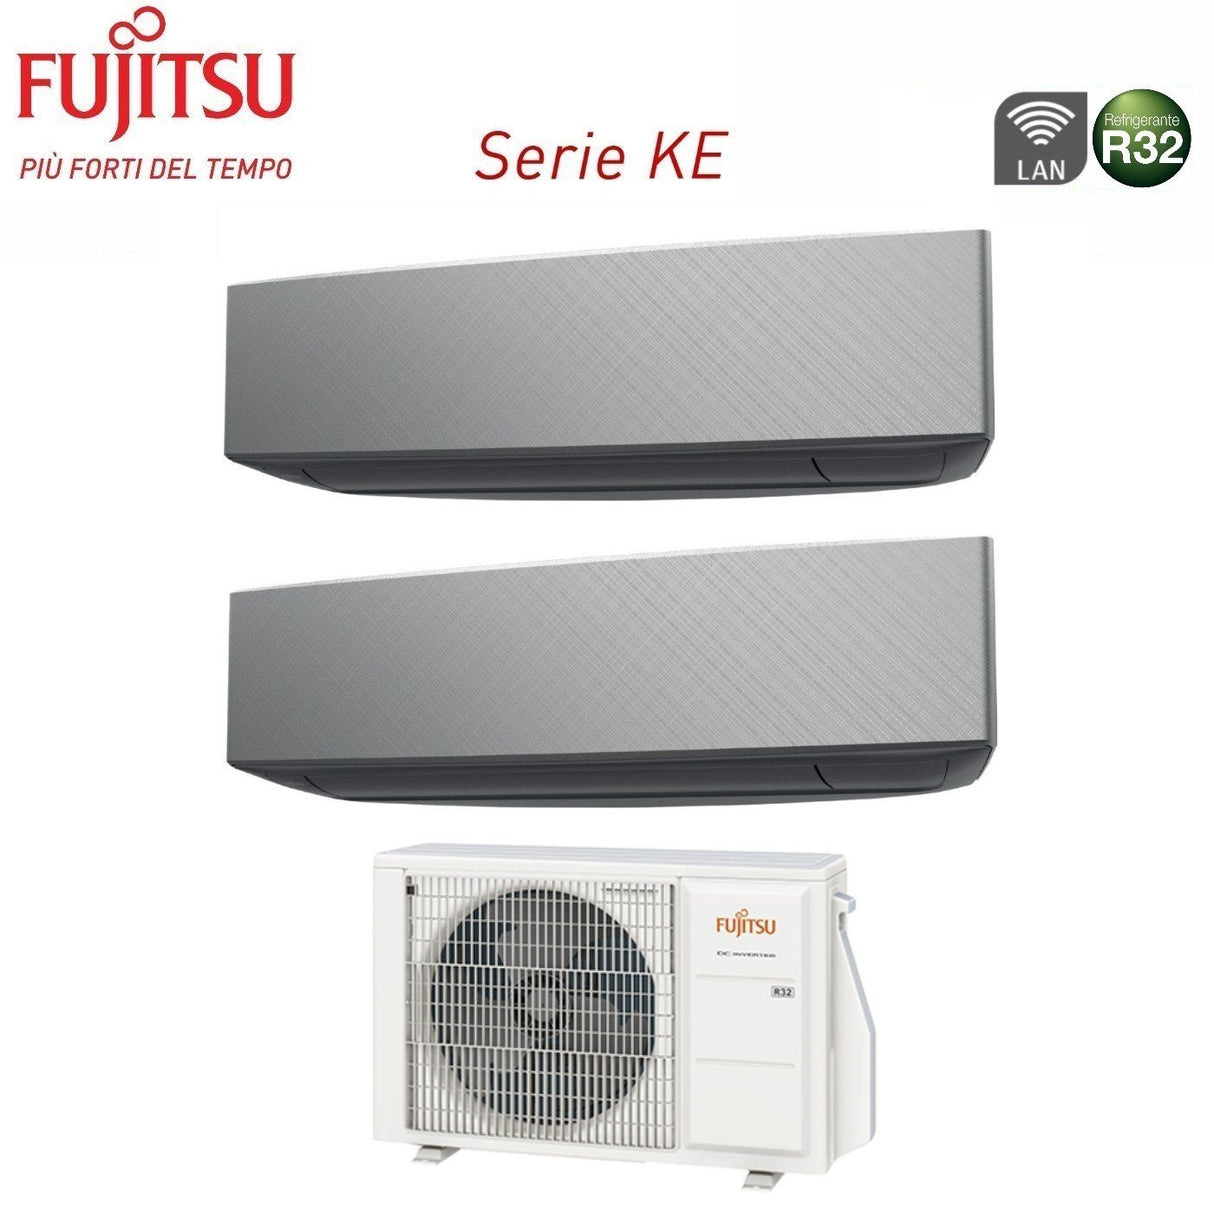 immagine-2-fujitsu-climatizzatore-condizionatore-fujitsu-dual-split-inverter-serie-ke-silver-1214-con-aoyg18kbta2-r-32-wi-fi-integrato-1200014000-colore-argento